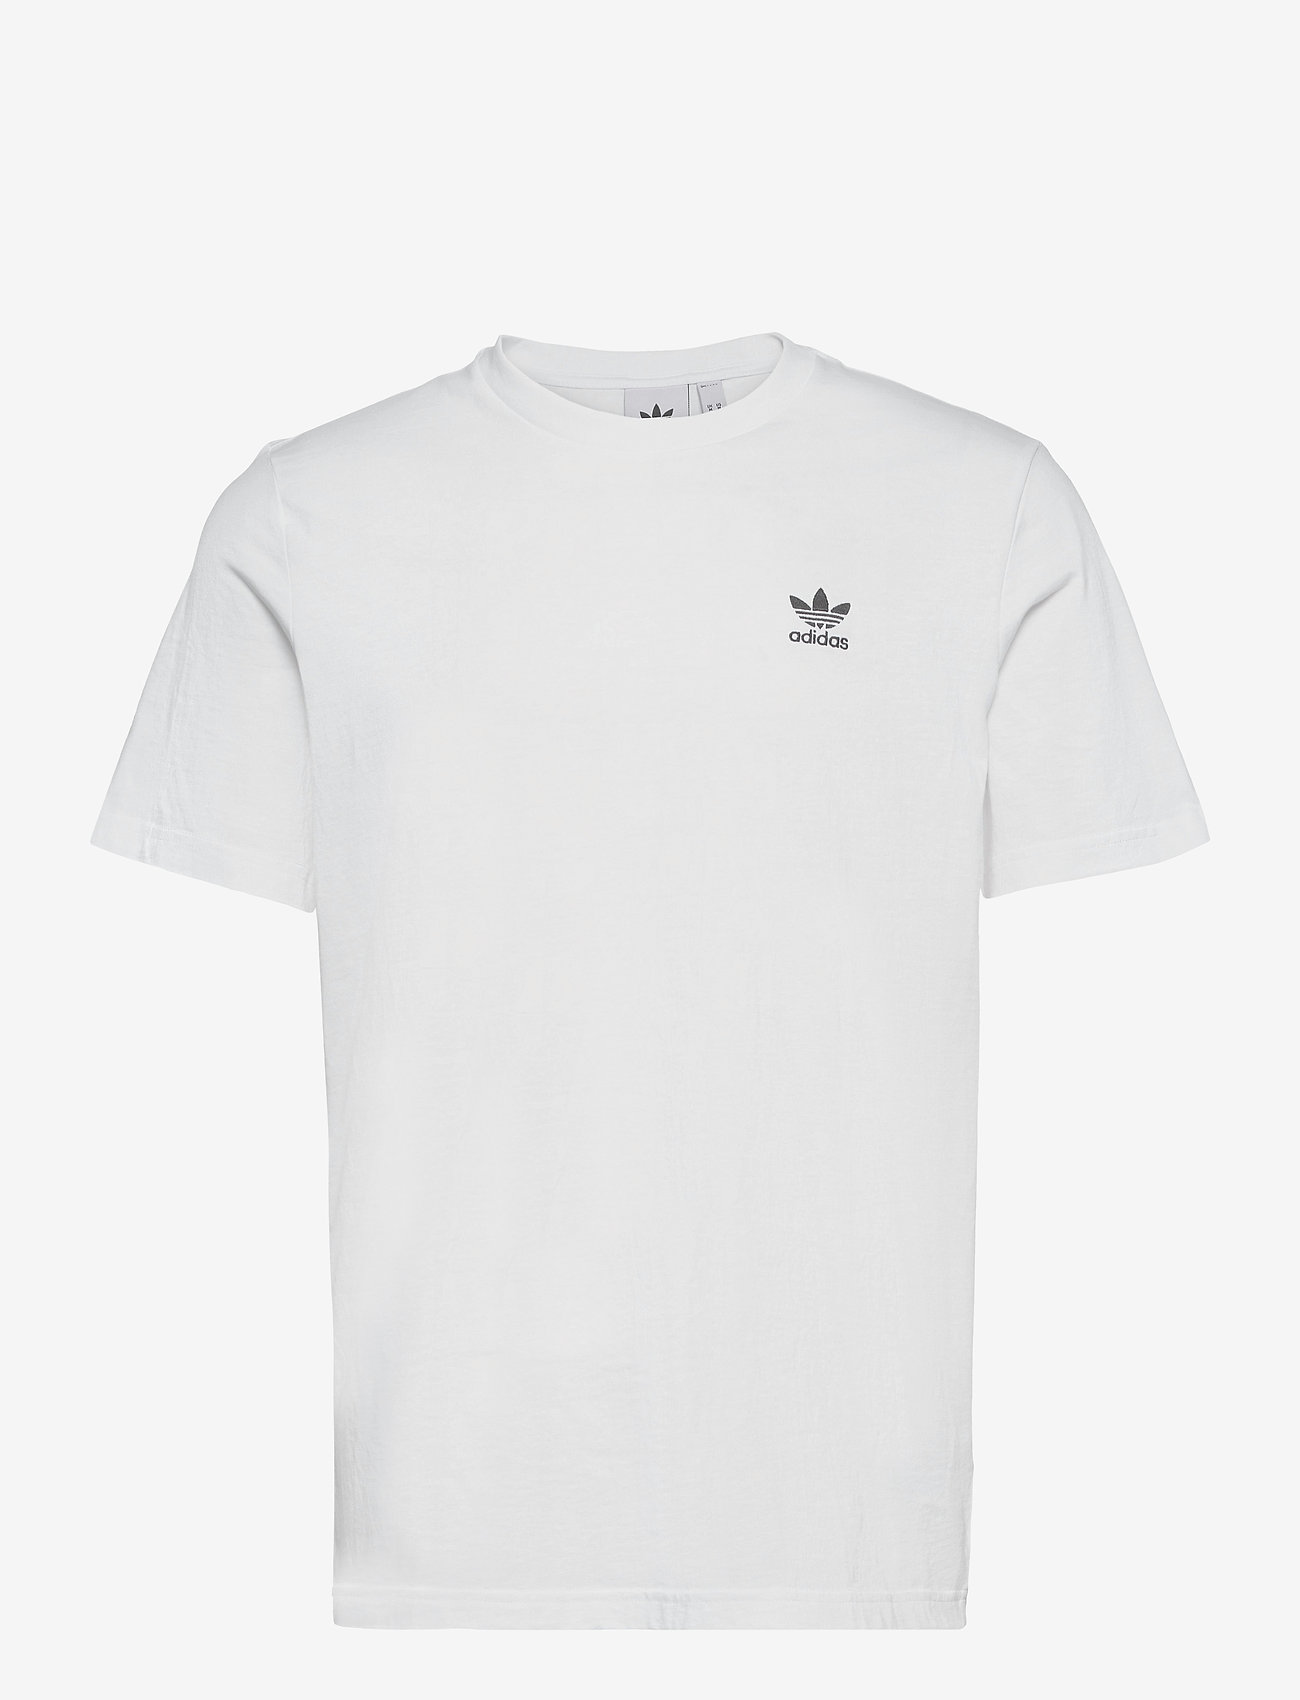 adidas Originals - Adicolor Essentials Trefoil T-Shirt - white - 0